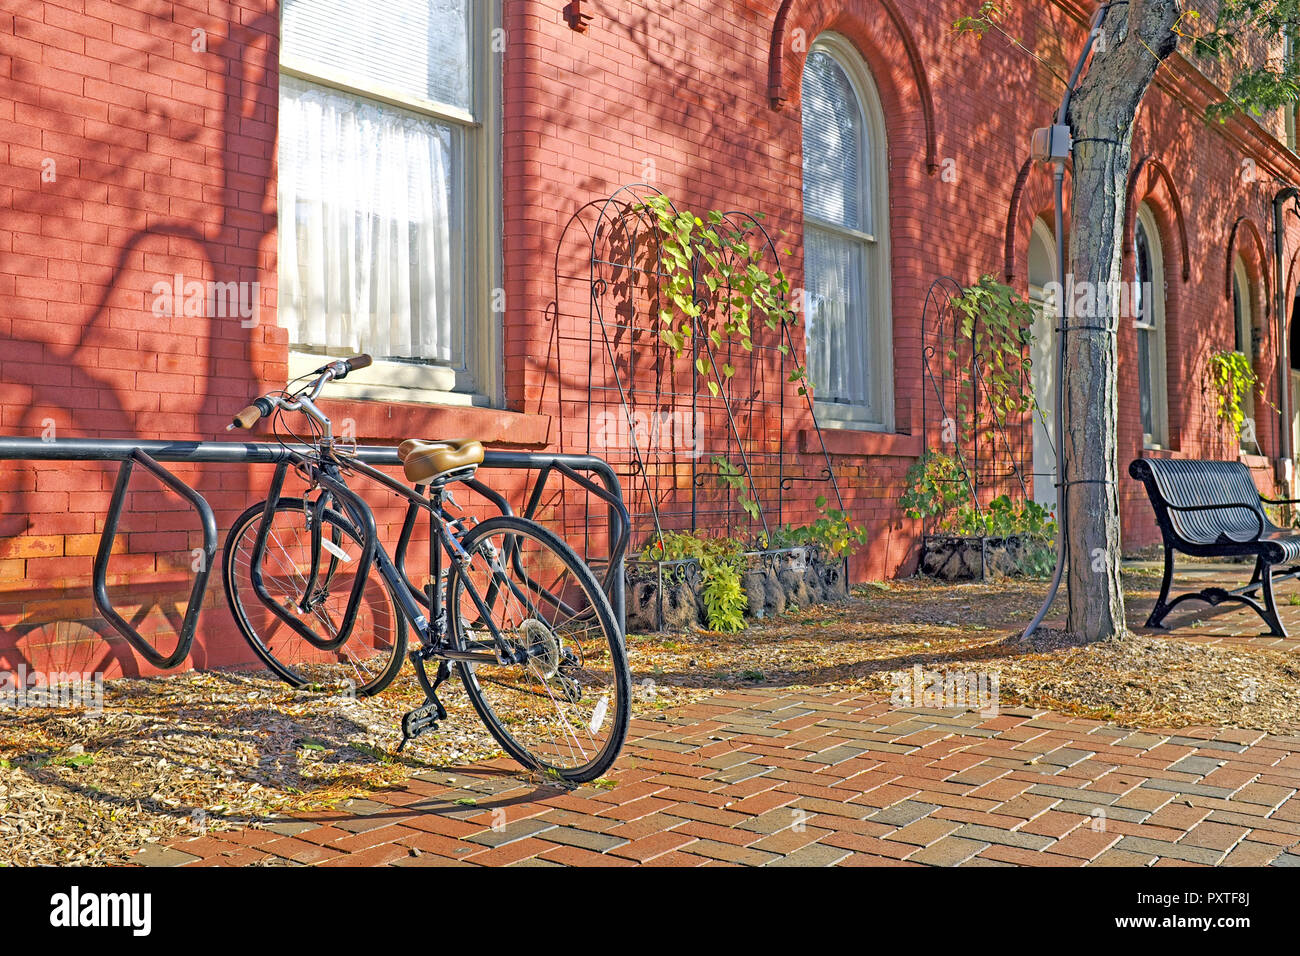 Au début de l'automne dans l'Ohio, Wiloughby scène où un seul vélo est garé à côté d'un bâtiment orange russet avec une poignée de feuilles mortes. Banque D'Images